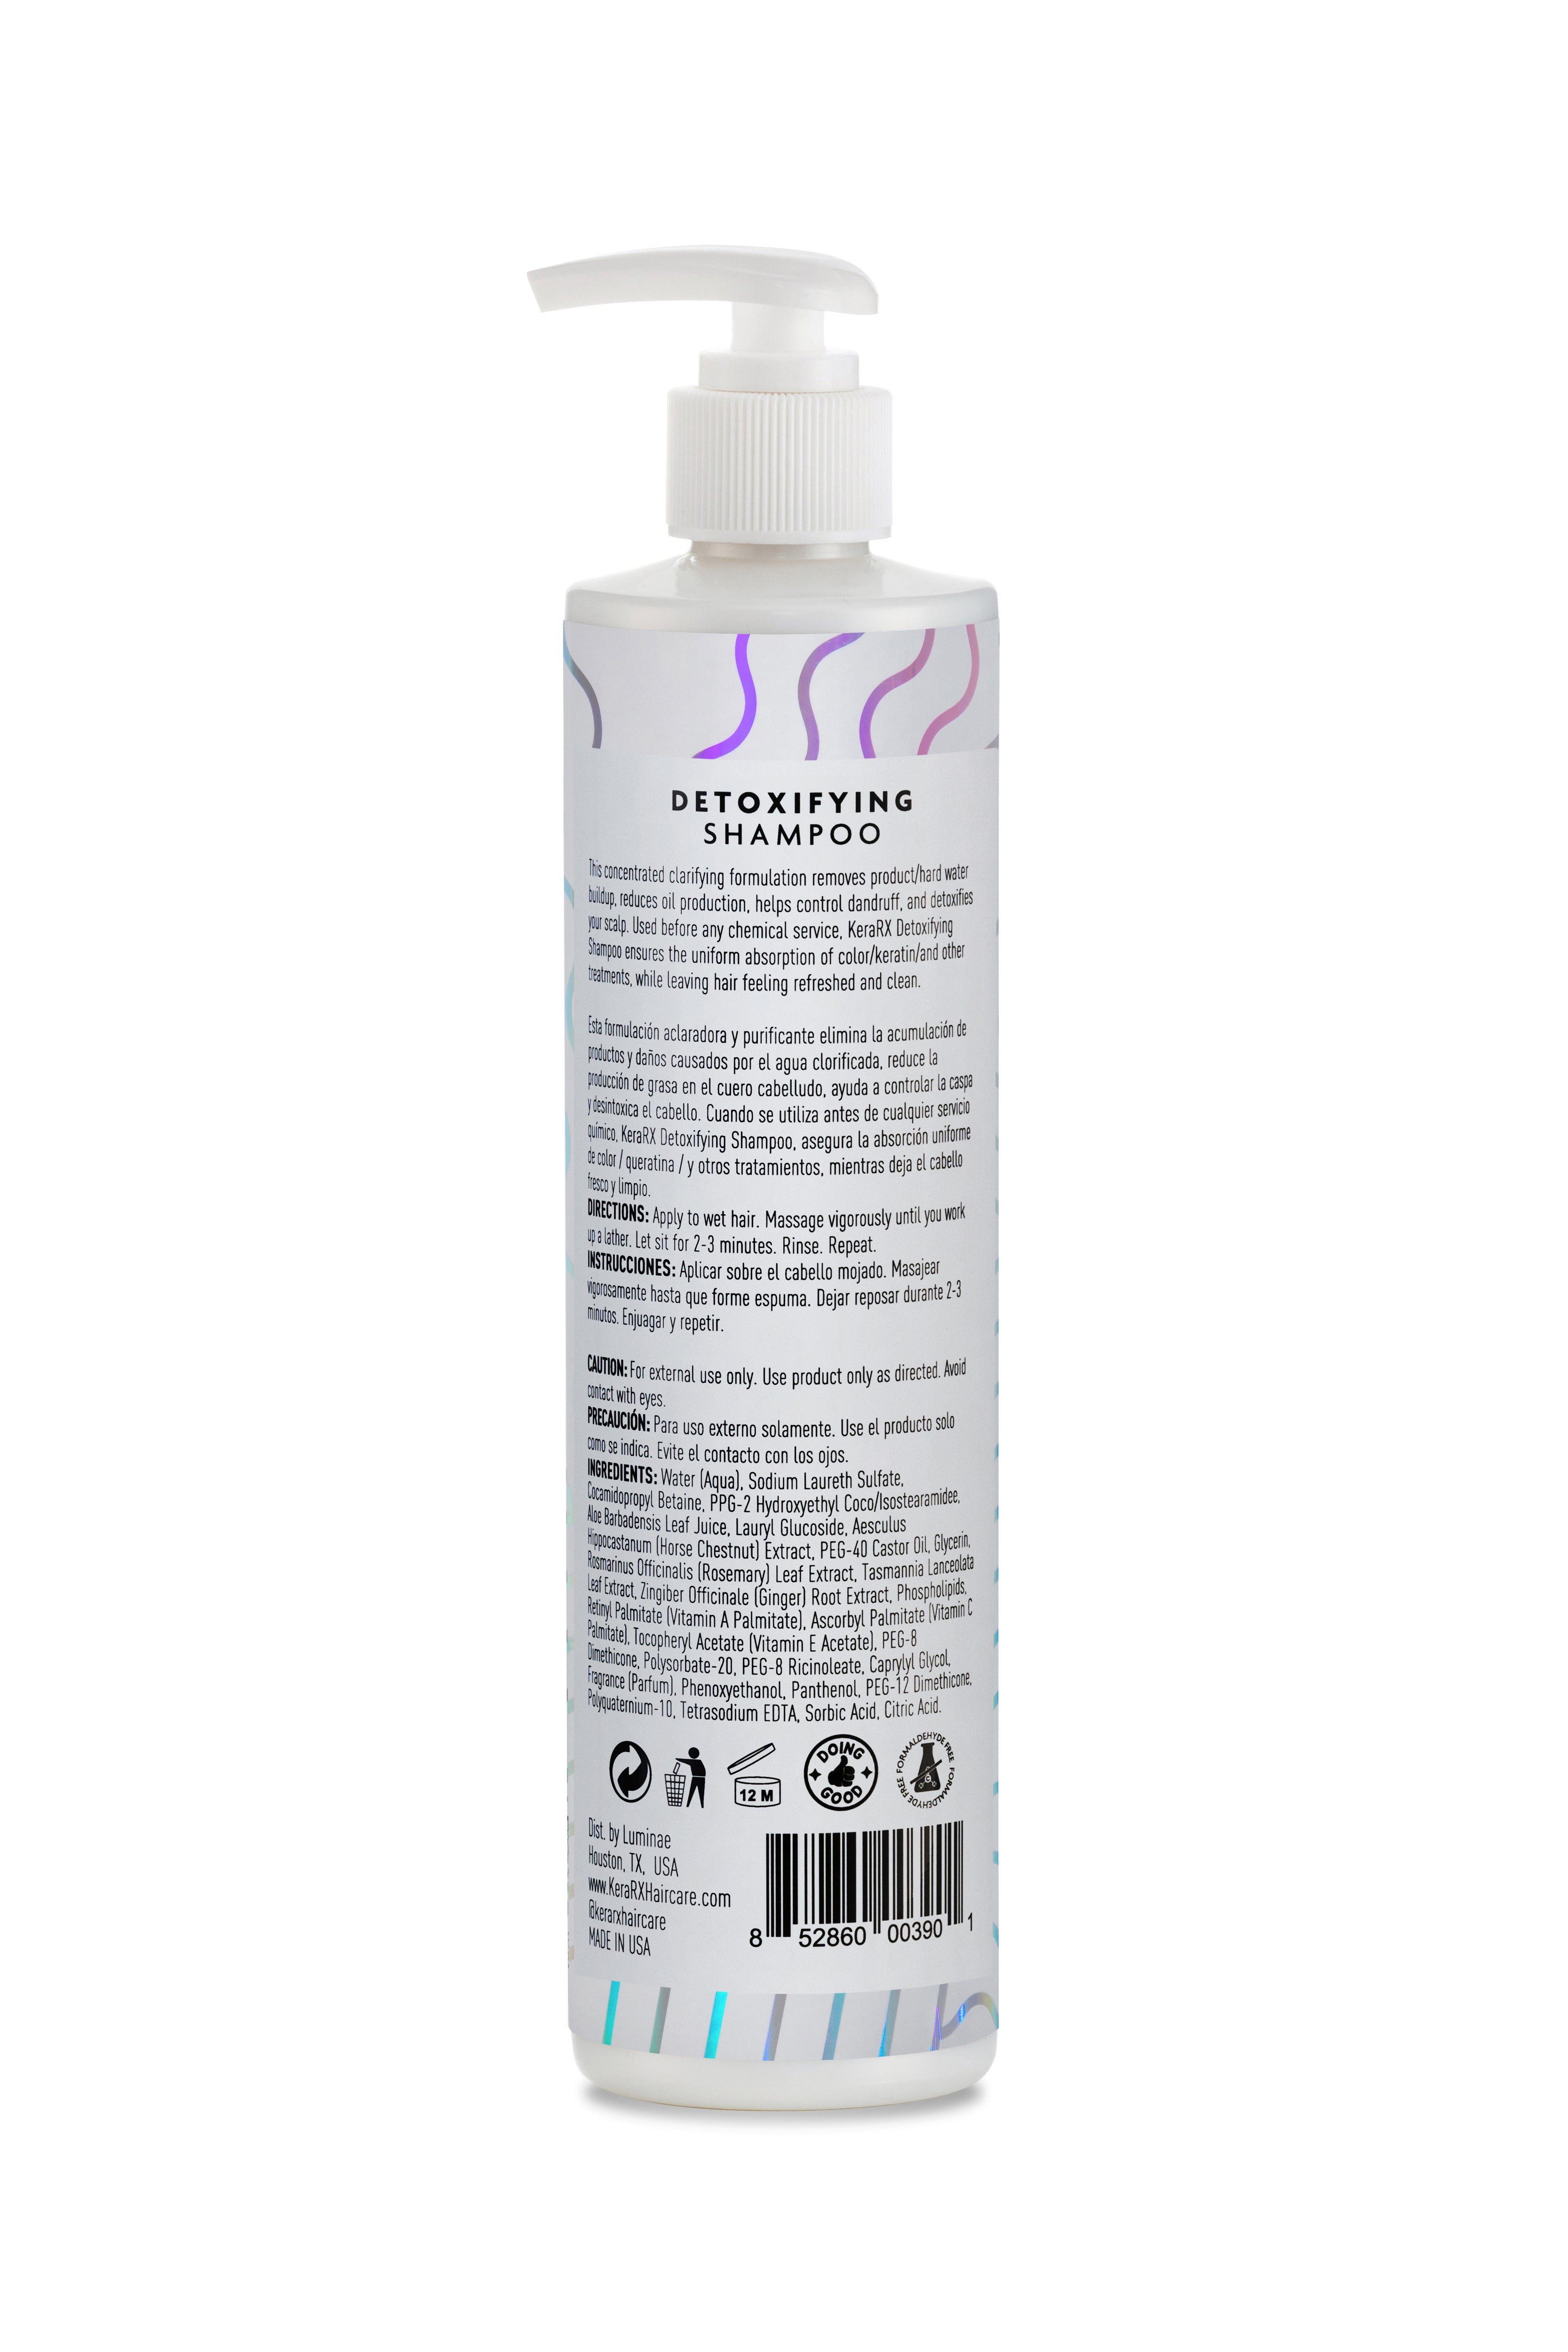 Detoxifying Shampoo | Kera/RX Haircare